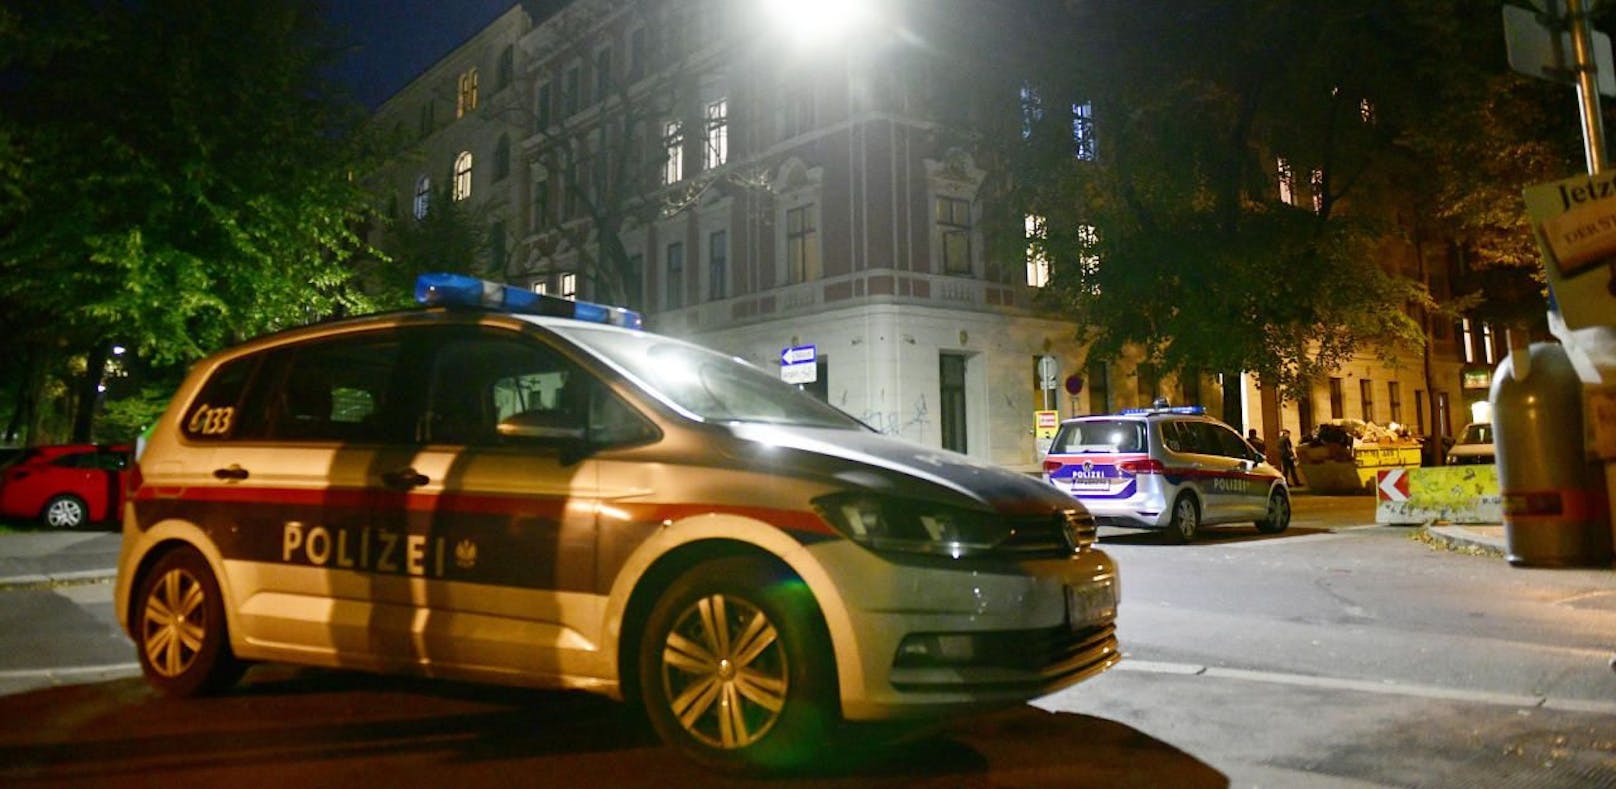 In der Nacht auf Sonntag hat die Polizei zwei jugendliche Randalierer in Wien-Josefstadt festgenommen (Symbolfoto)